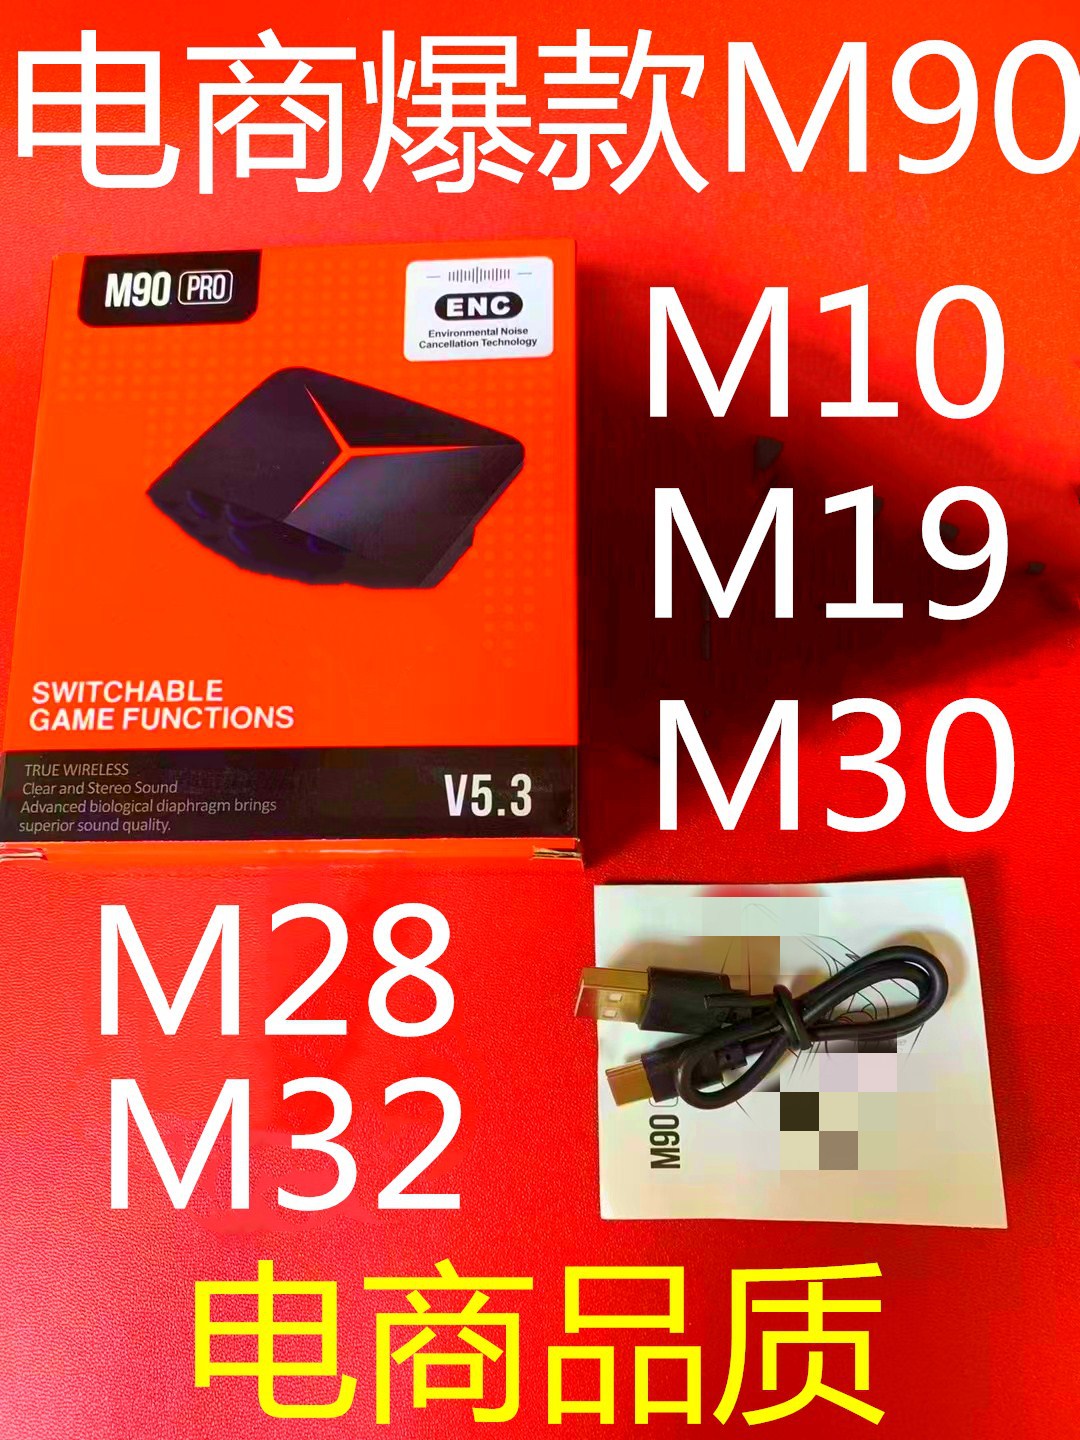 M90 Cross-Border E-Commerce Gift Headset M90pro M19 M28 M32 M30 M10 F9 I12 PRO6